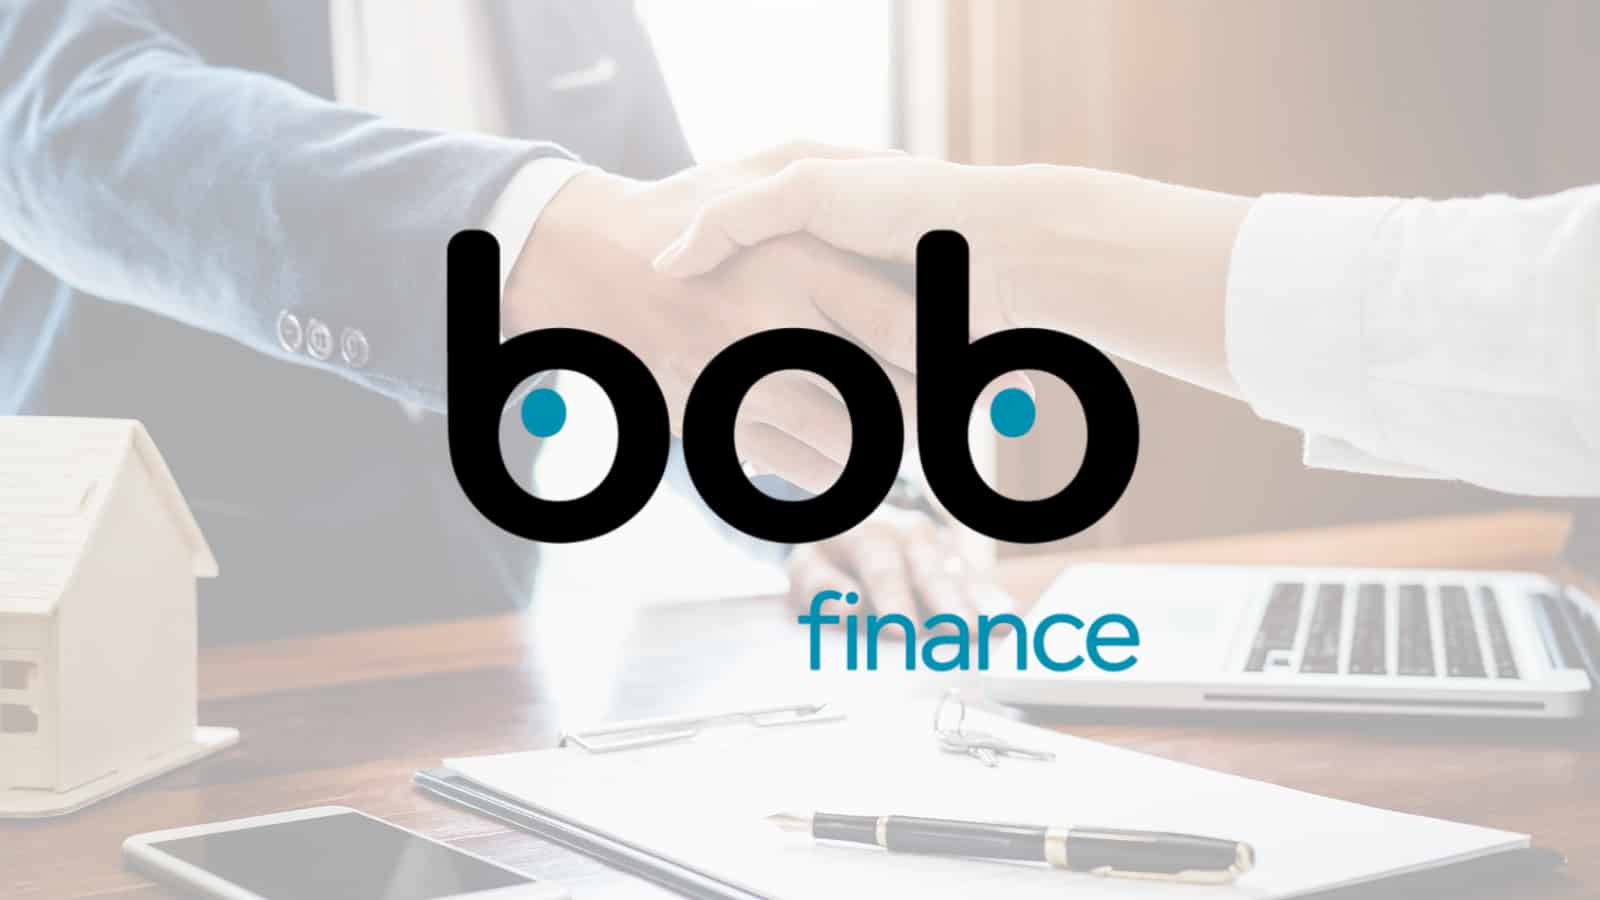 Personal loan from Bob Finance